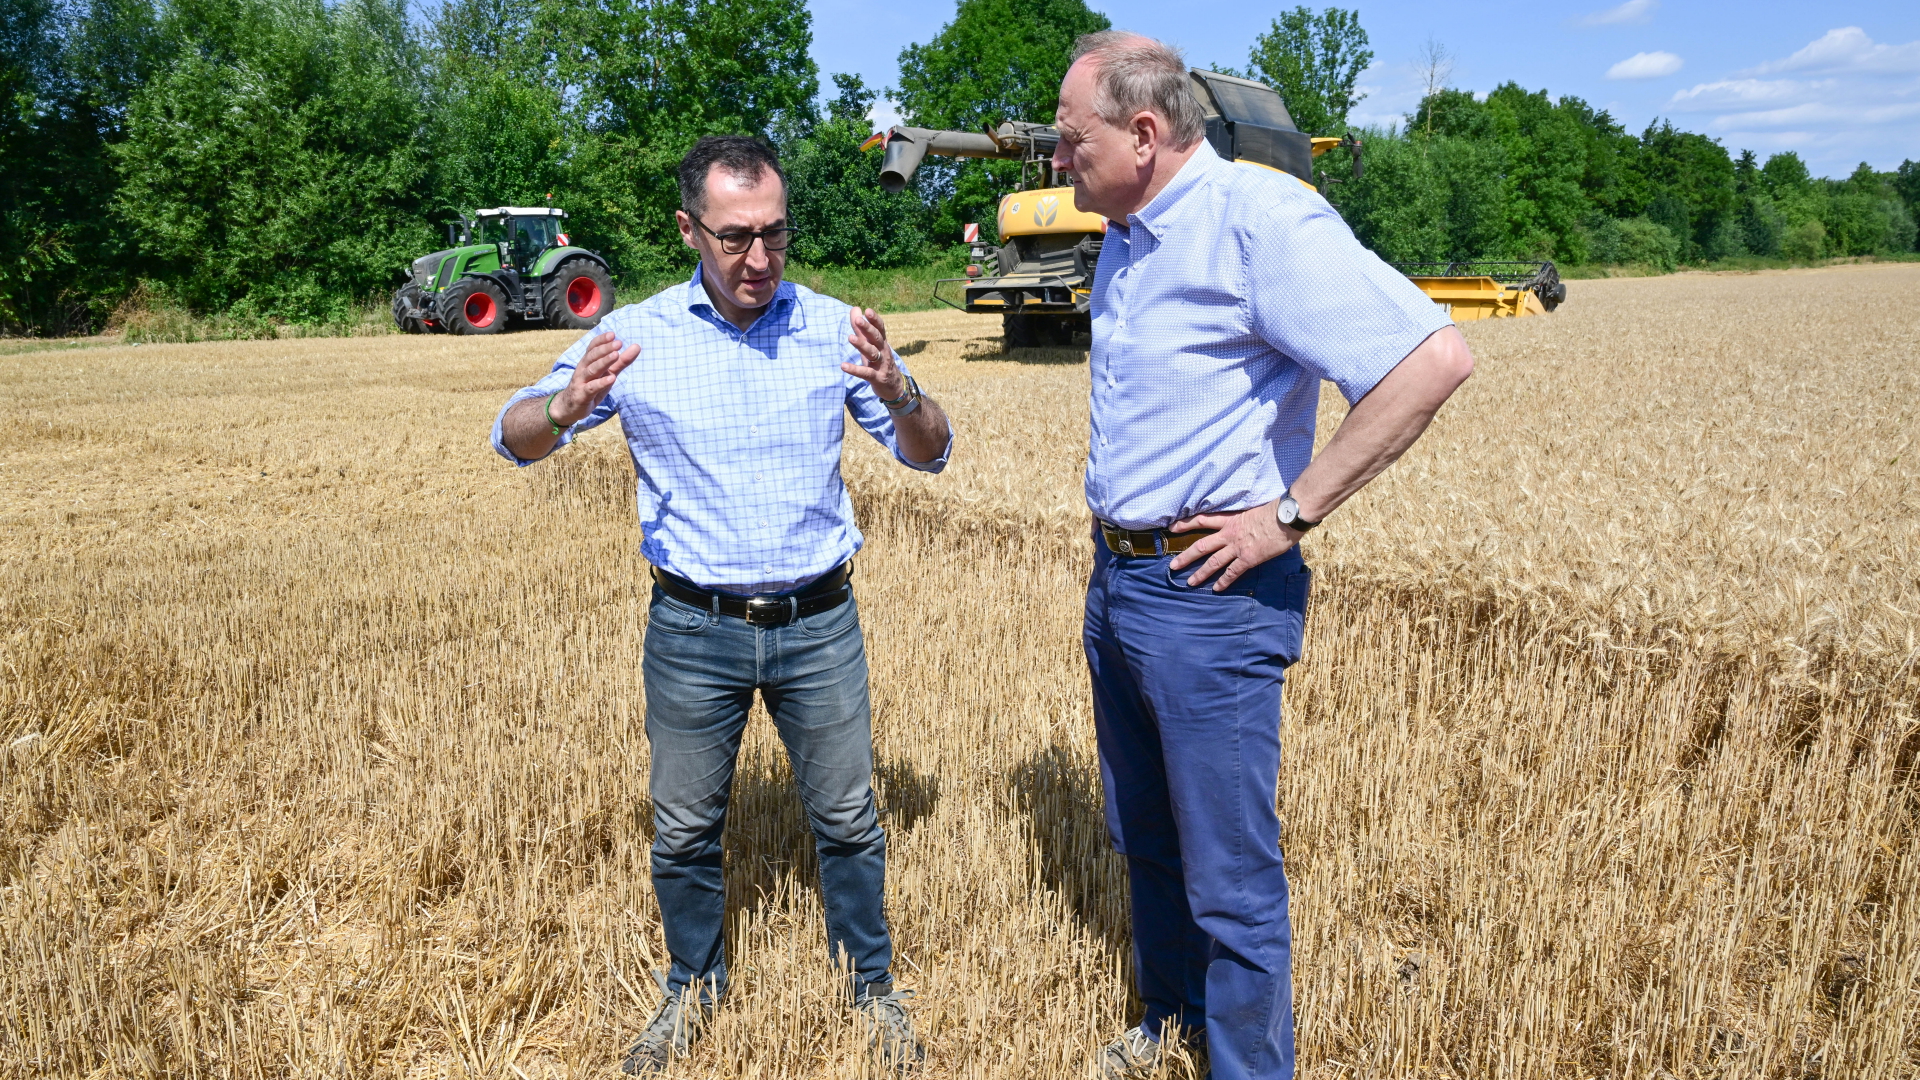 Bundesagrarminister Cem Özdemir (l, Bündnis 90/Die Grünen) unterhält sich mit Joachim Rukwied, dem Präsidenten des Deutschen Bauernverbands, auf einem Getreidefeld. | dpa